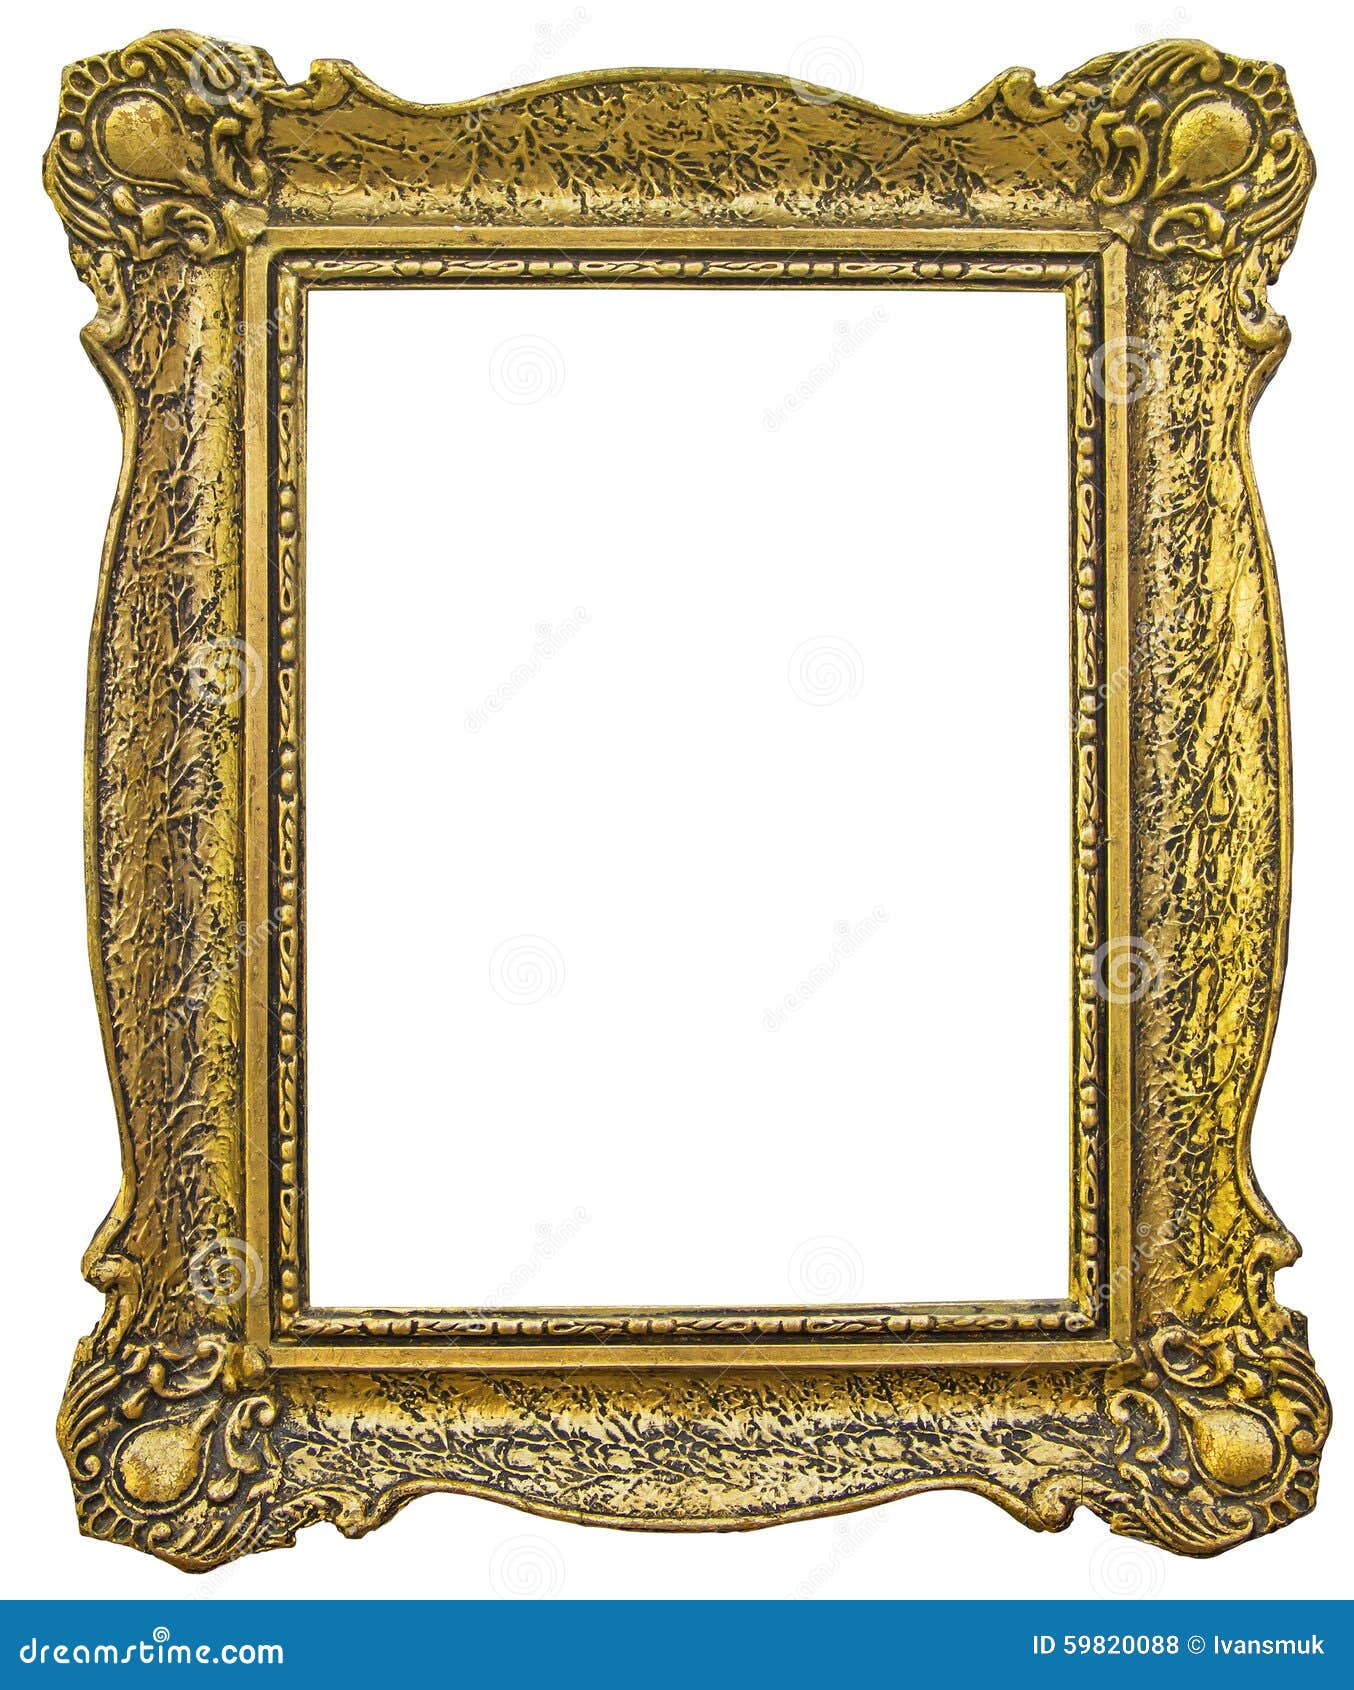 old wooden gilded frame